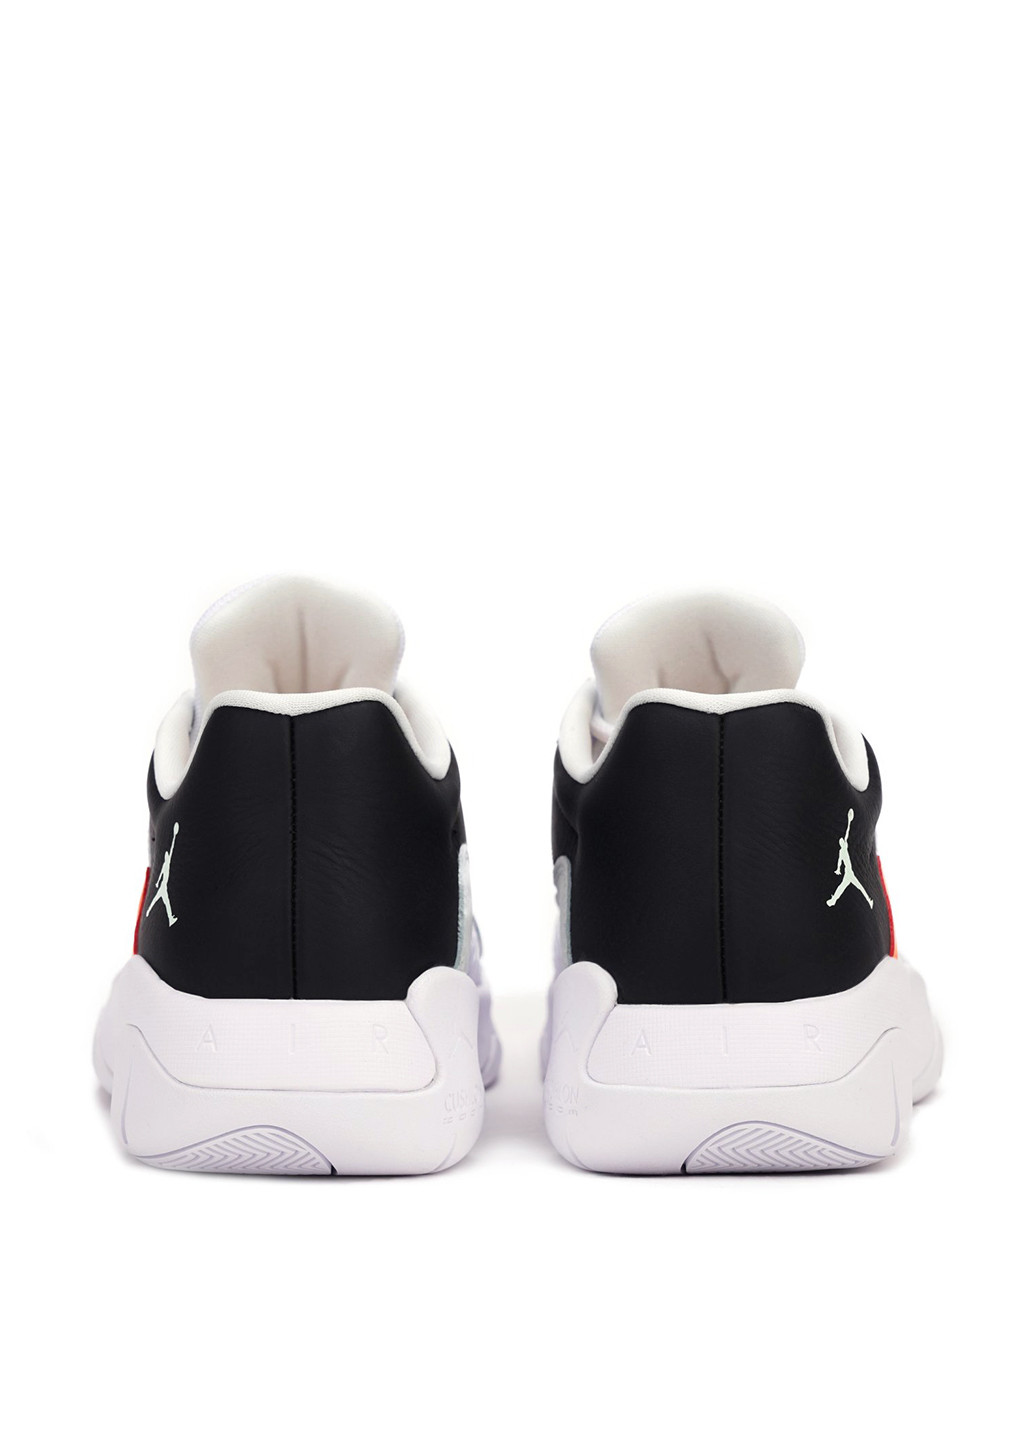 Цветные демисезонные кроссовки Nike Air Jordan 11 Cmft Low